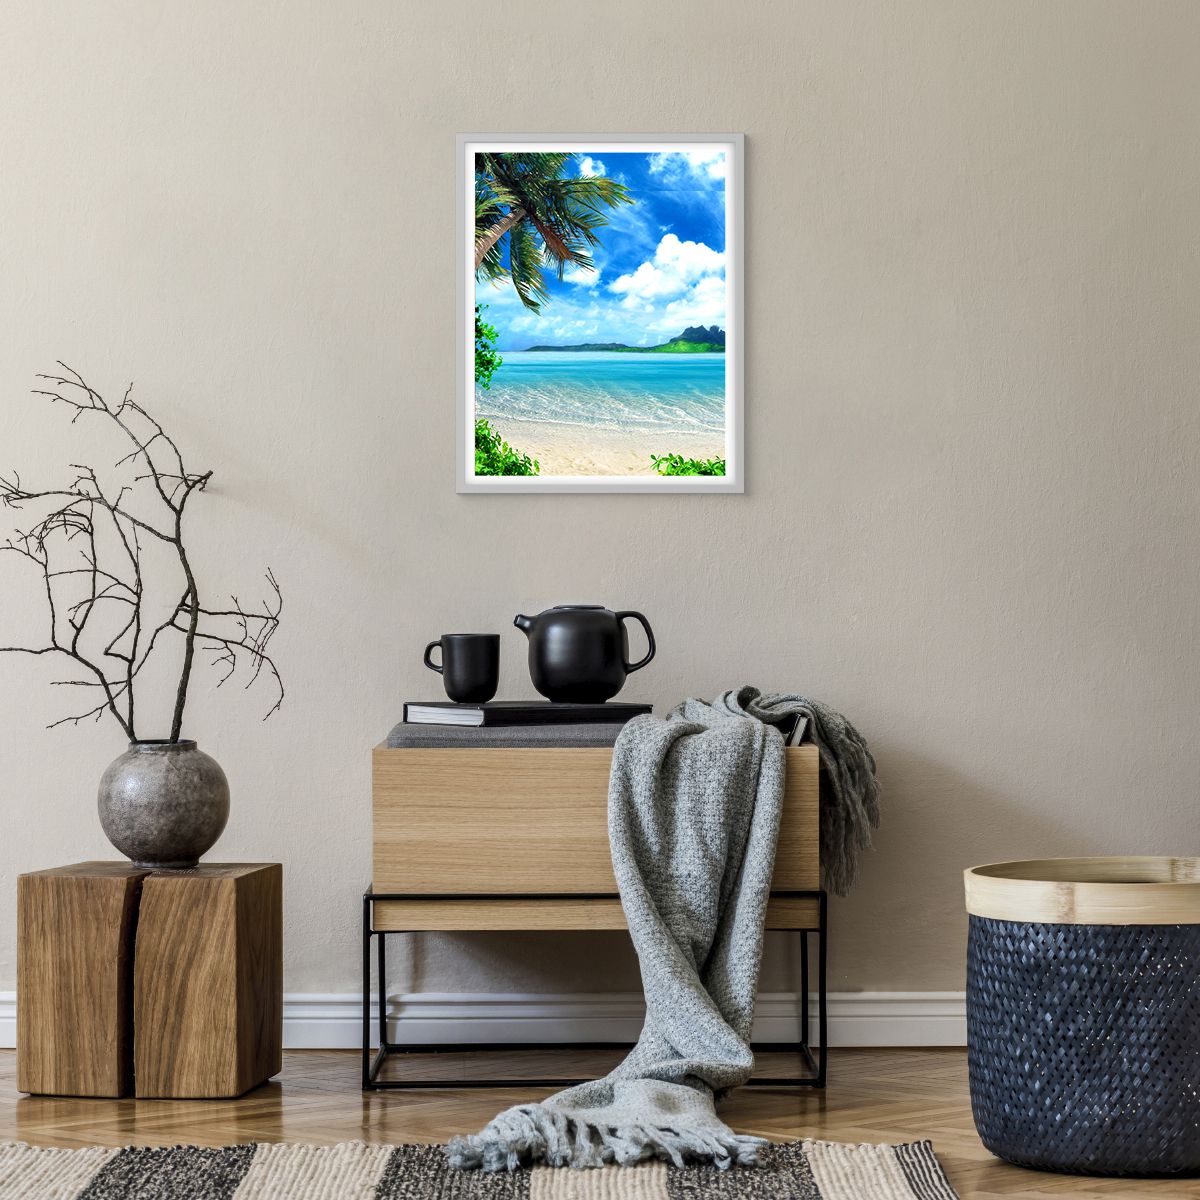 Poster in einem weißen Rahmen Landschaft, Poster in einem weißen Rahmen Ozean, Poster in einem weißen Rahmen Strand, Poster in einem weißen Rahmen Mysteriöse Insel, Poster in einem weißen Rahmen Tropen